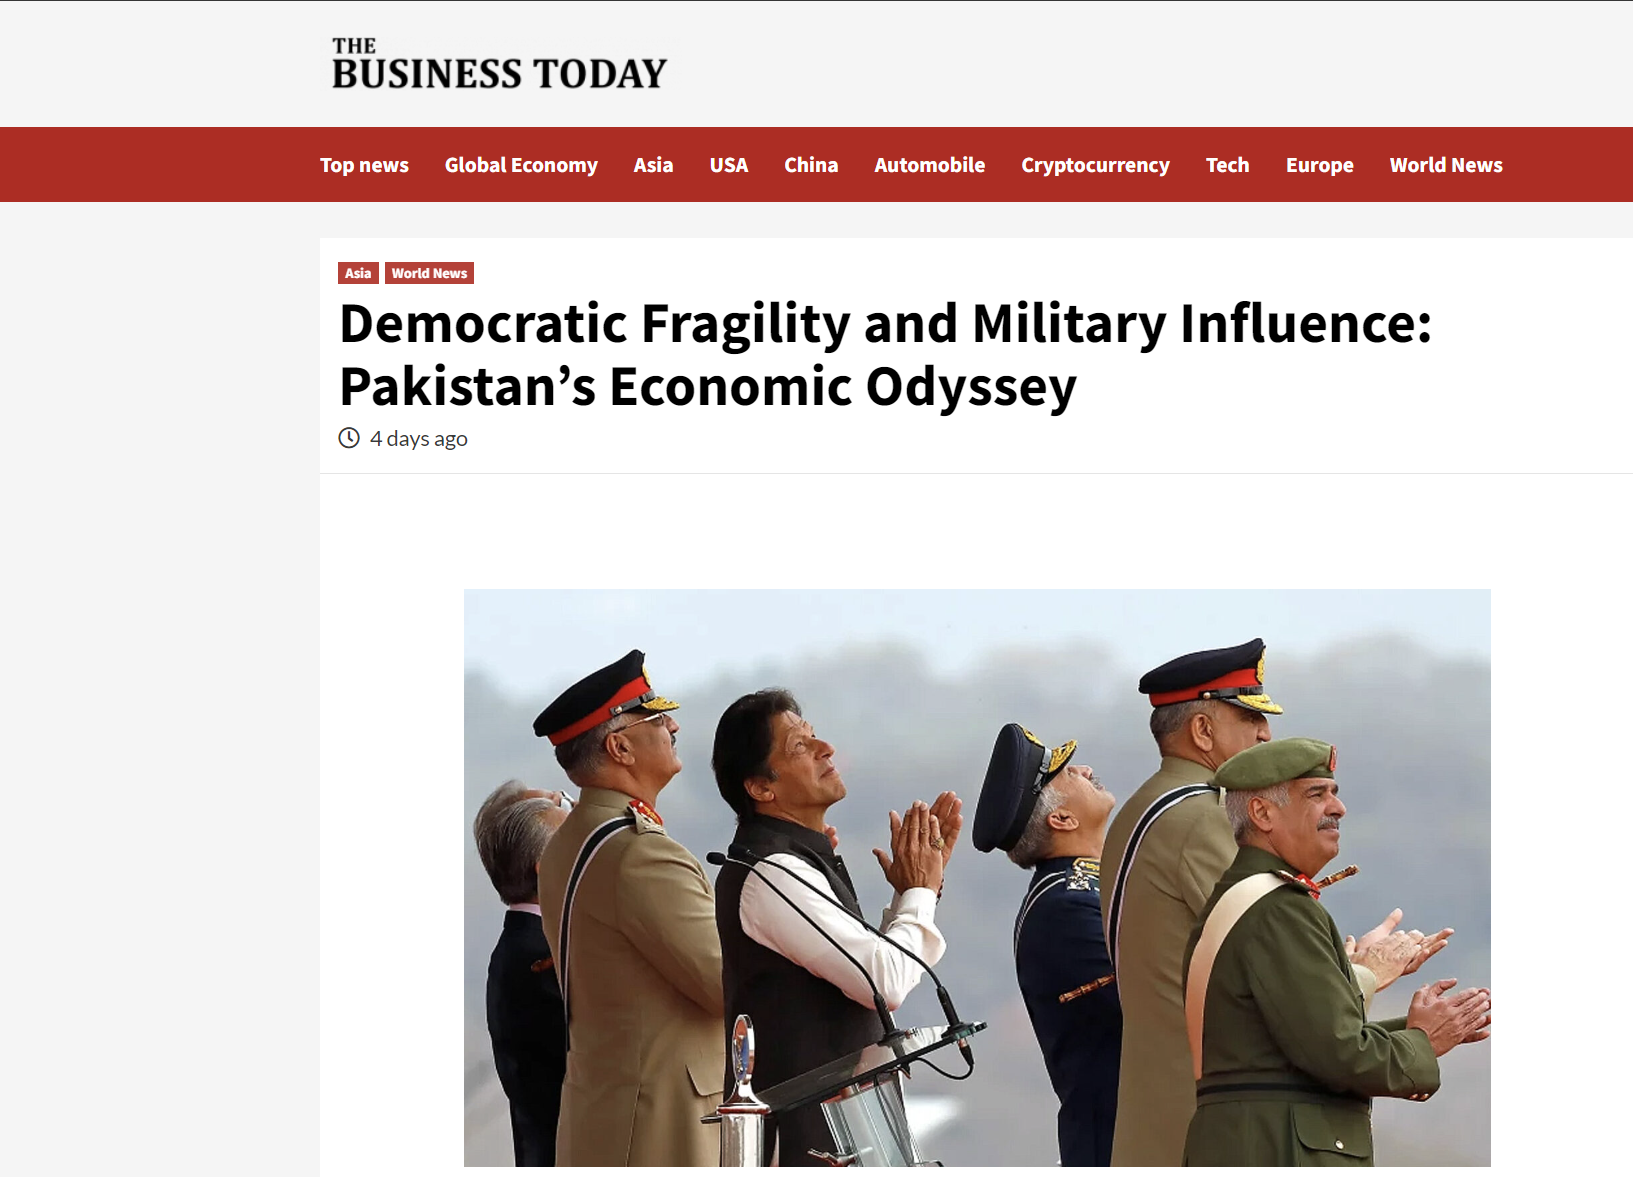 Business Today: Η οικονομική Οδύσσεια του Πακιστάν! Εύθραυστη δημοκρατία και στρατιωτική επιρροή